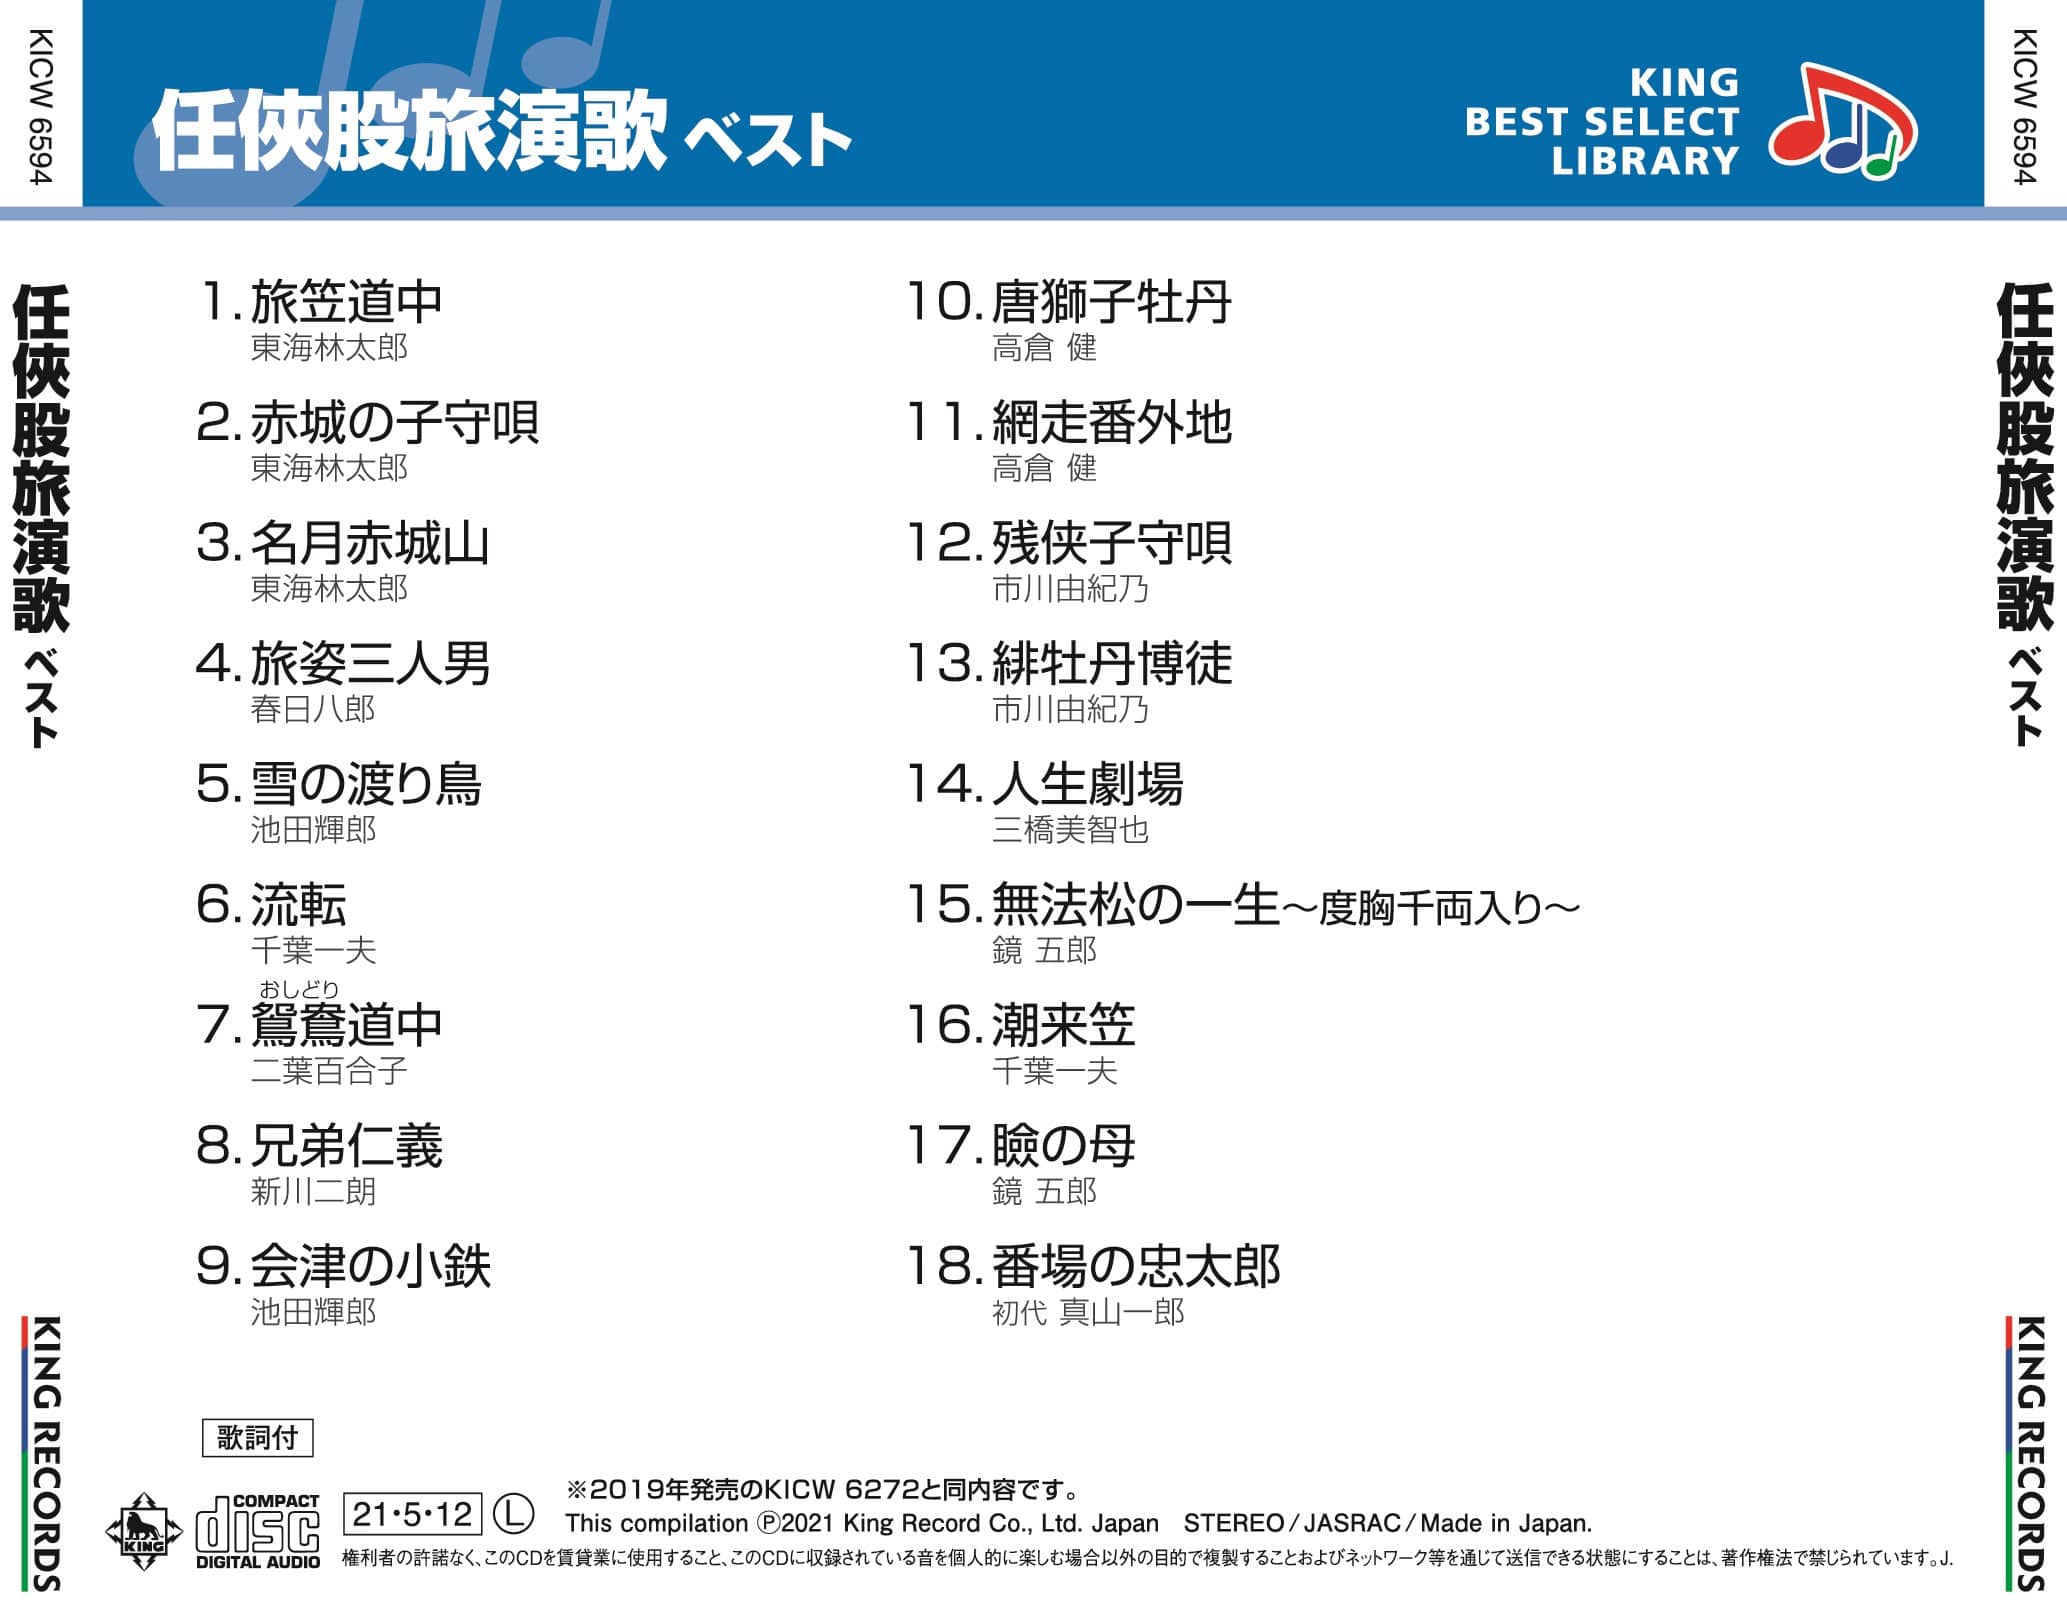 任侠股旅演歌 ベスト キング・ベスト・セレクト・ライブラリー2021